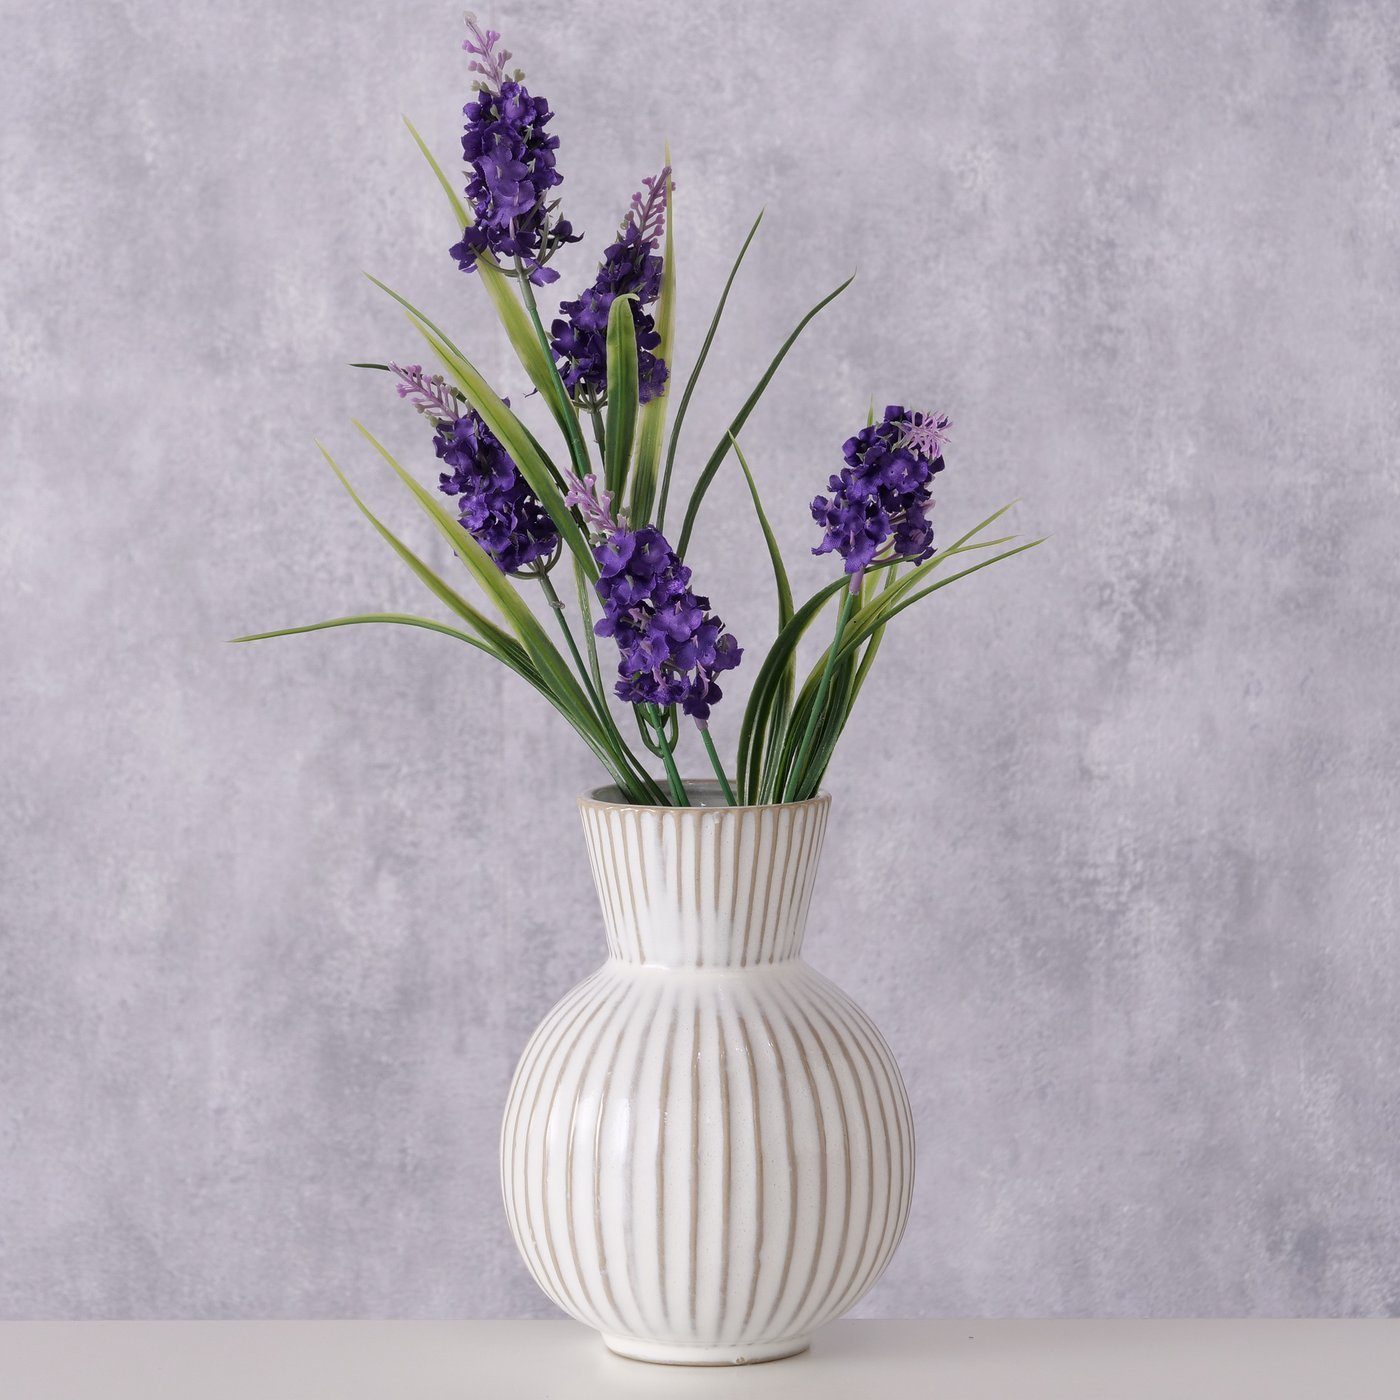 BOLTZE Dekovase "Deborah" aus Keramik (Steingut) in cremeweiß, Vase Blumenvase